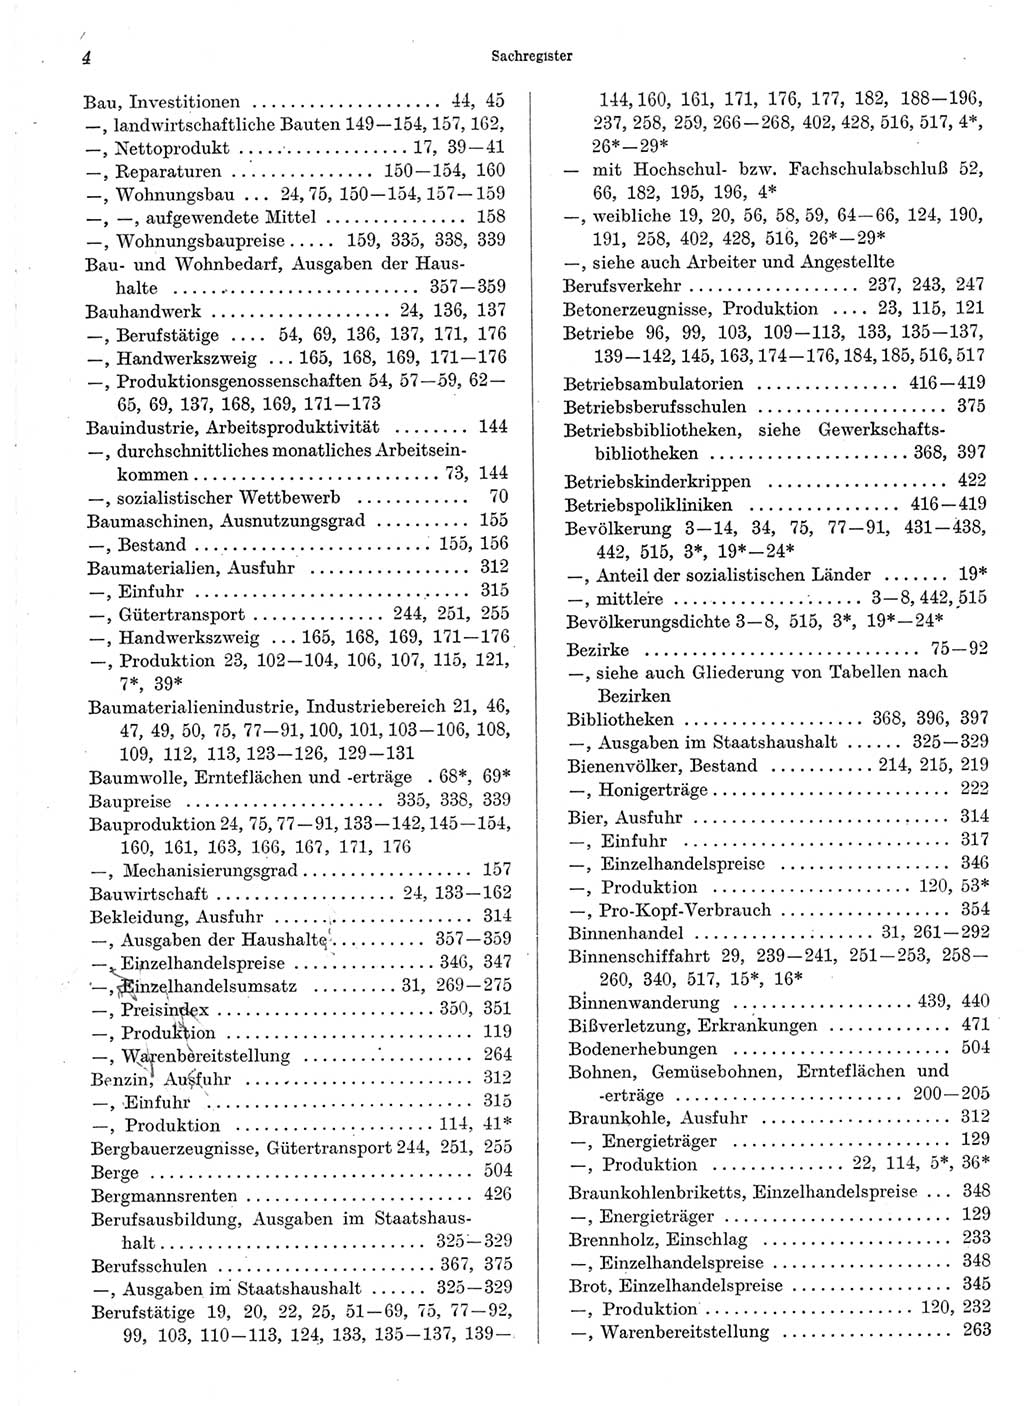 Statistisches Jahrbuch der Deutschen Demokratischen Republik (DDR) 1970, Seite 4 (Stat. Jb. DDR 1970, S. 4)